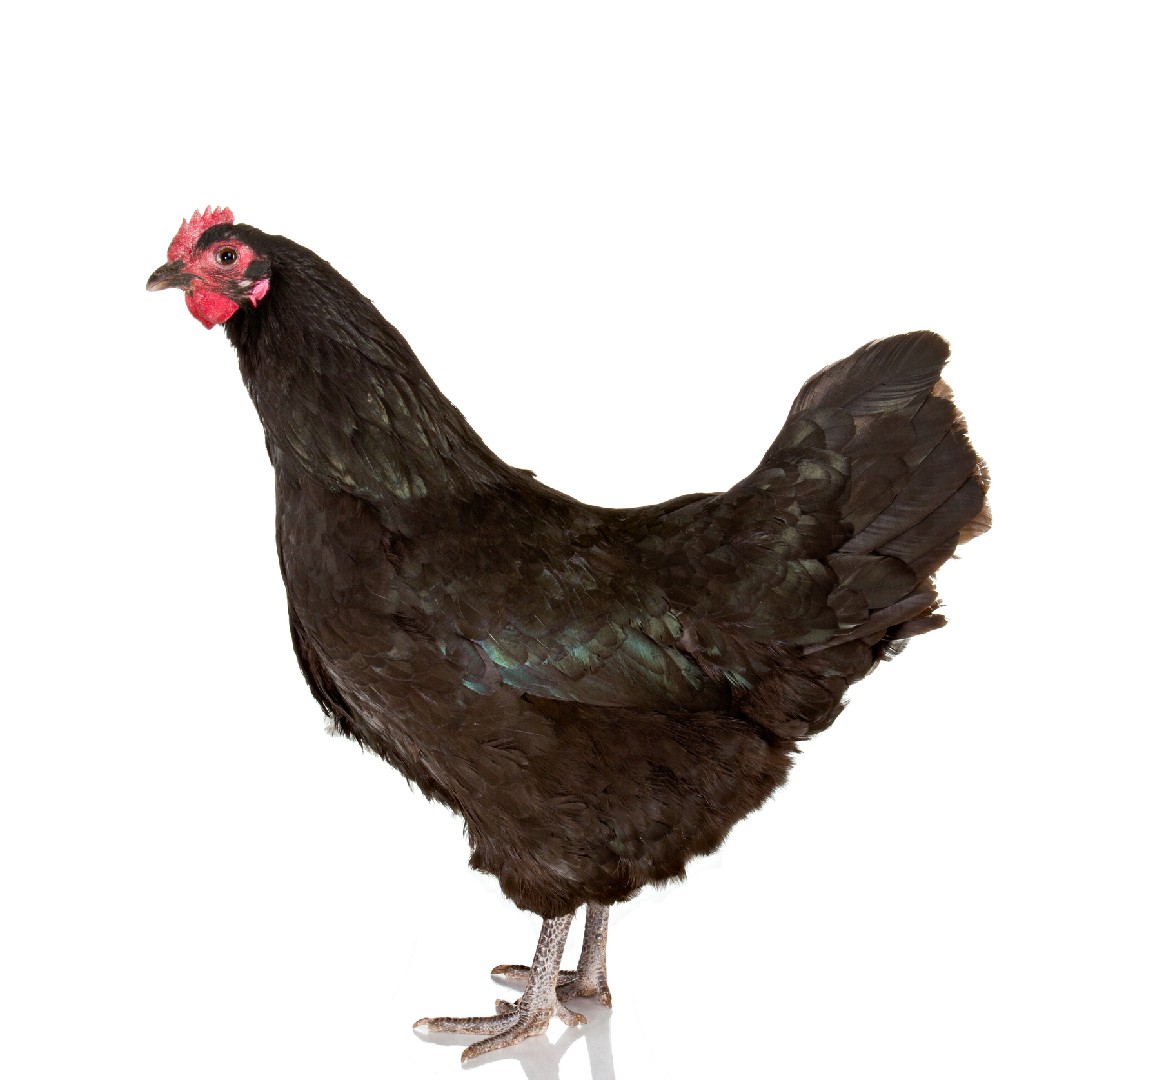 Australorp Chicken (Gallus gallus domesticus 'Australorp')